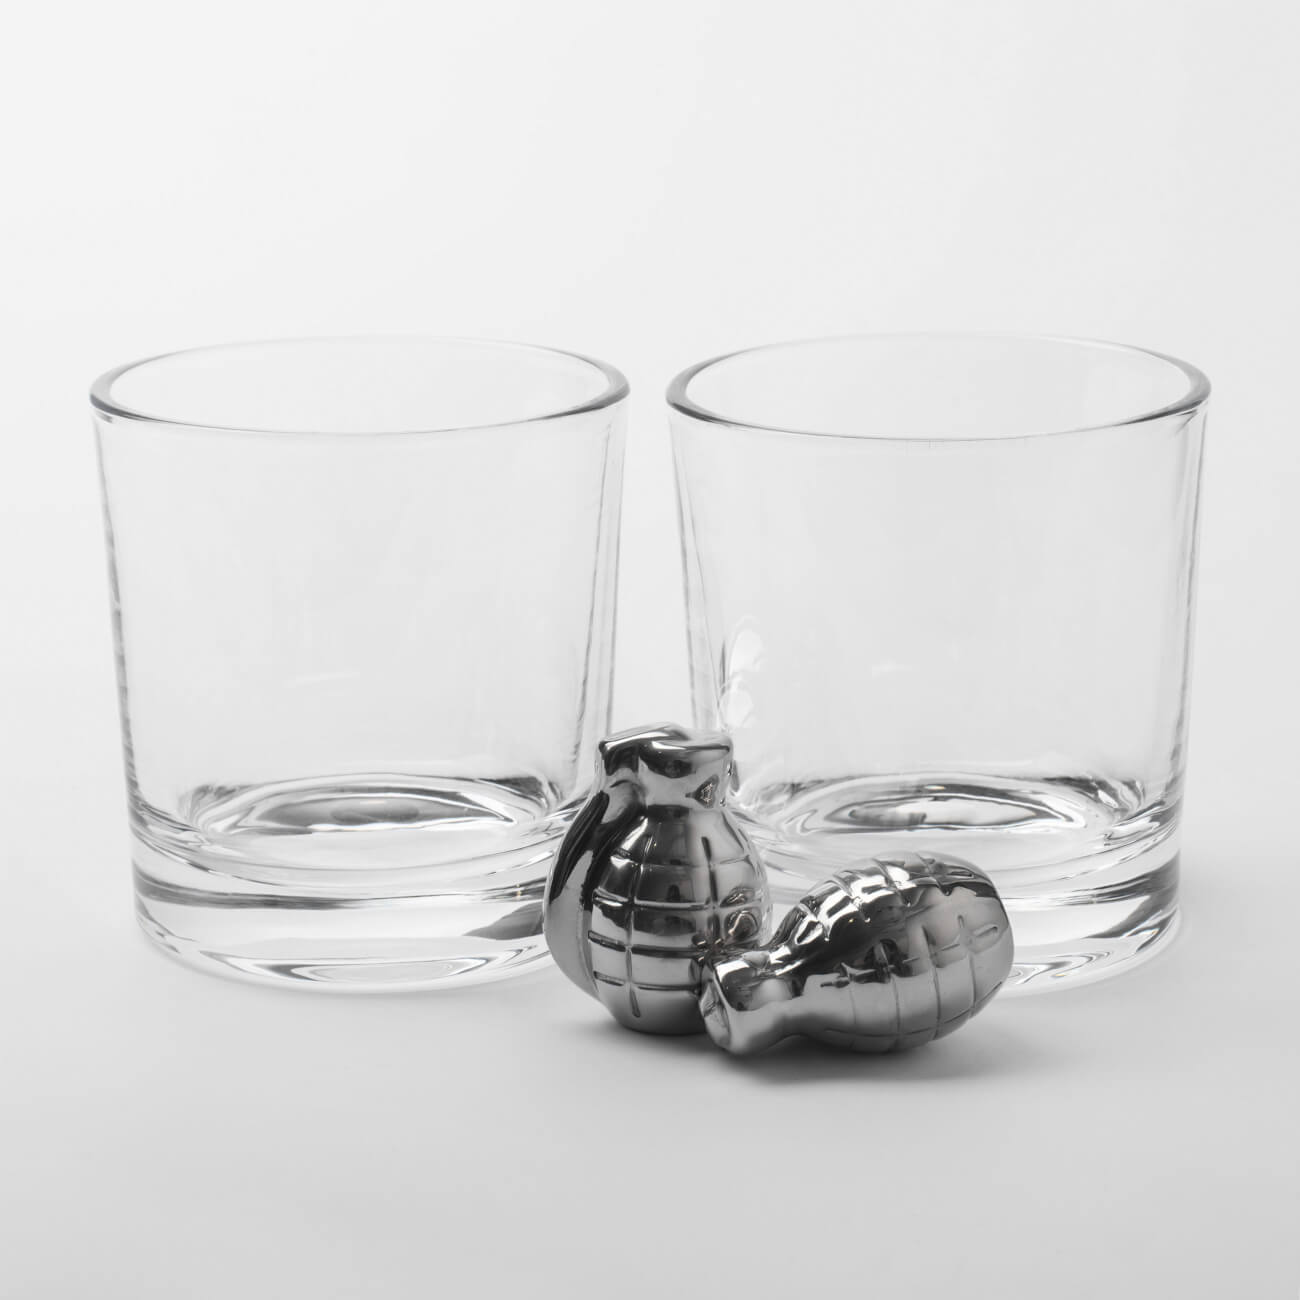 Набор для виски, 2 перс, 4 пр, стаканы/кубики, стекло/сталь, Граната, Bullet набор для виски 2 перс 6 пр стаканы кубики стекло сталь кракелюр пули bullet